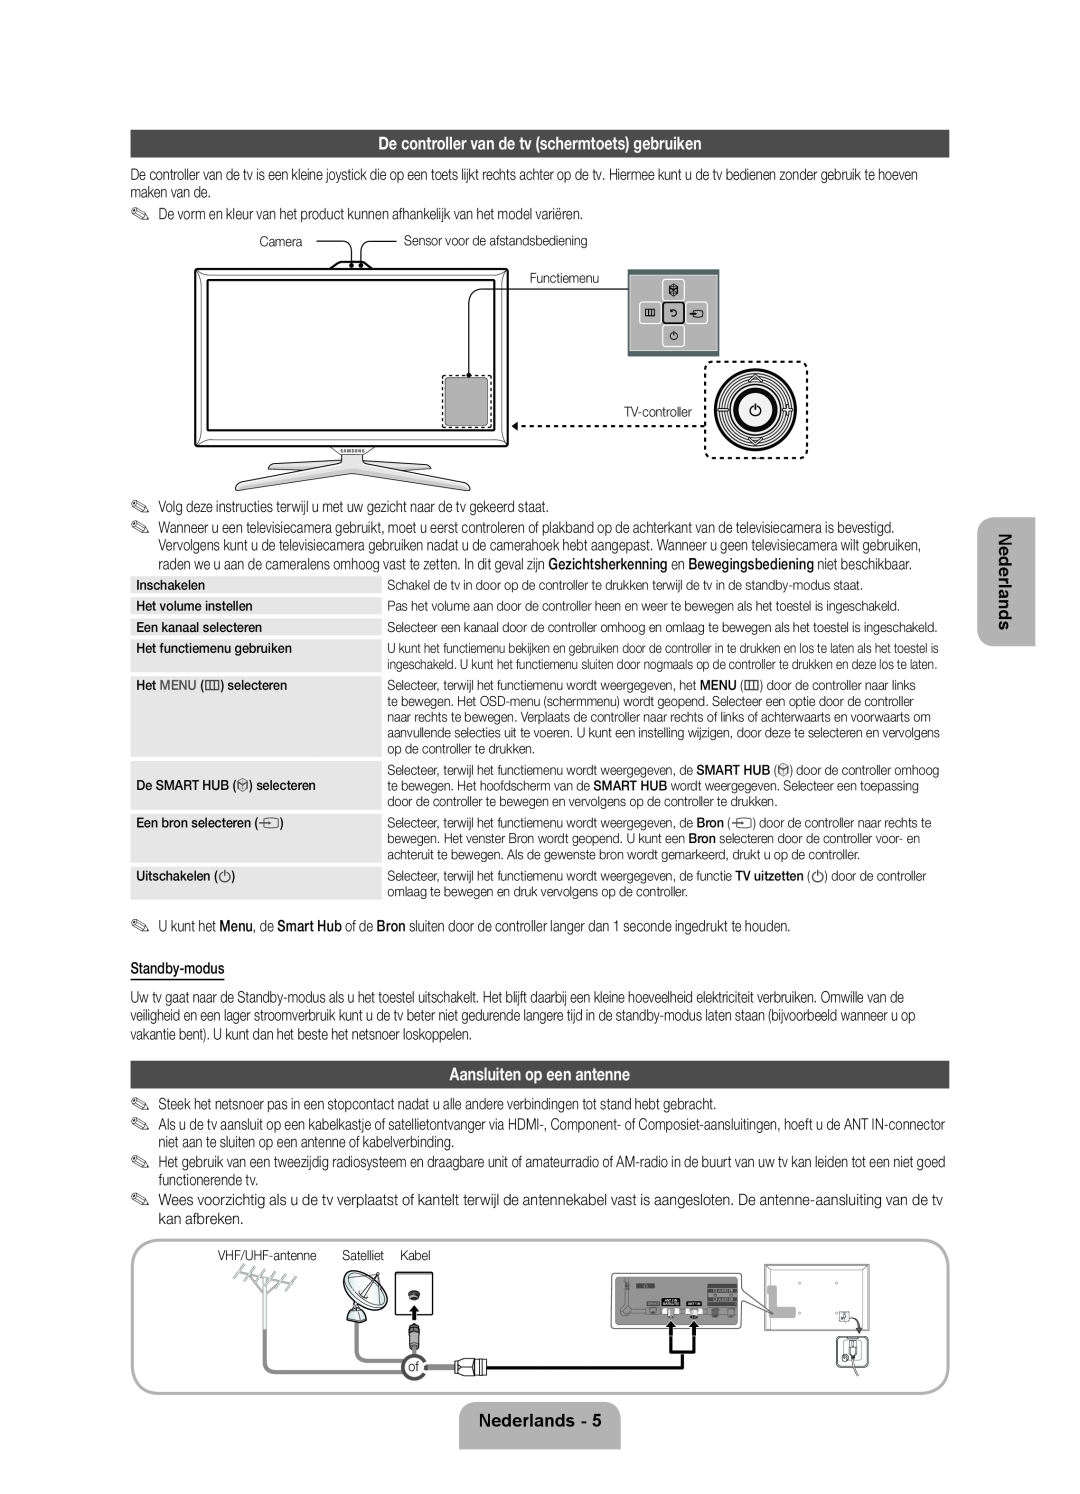 Samsung UE55ES7000SXTK manual De controller van de tv schermtoets gebruiken, Aansluiten op een antenne, Nederlands 